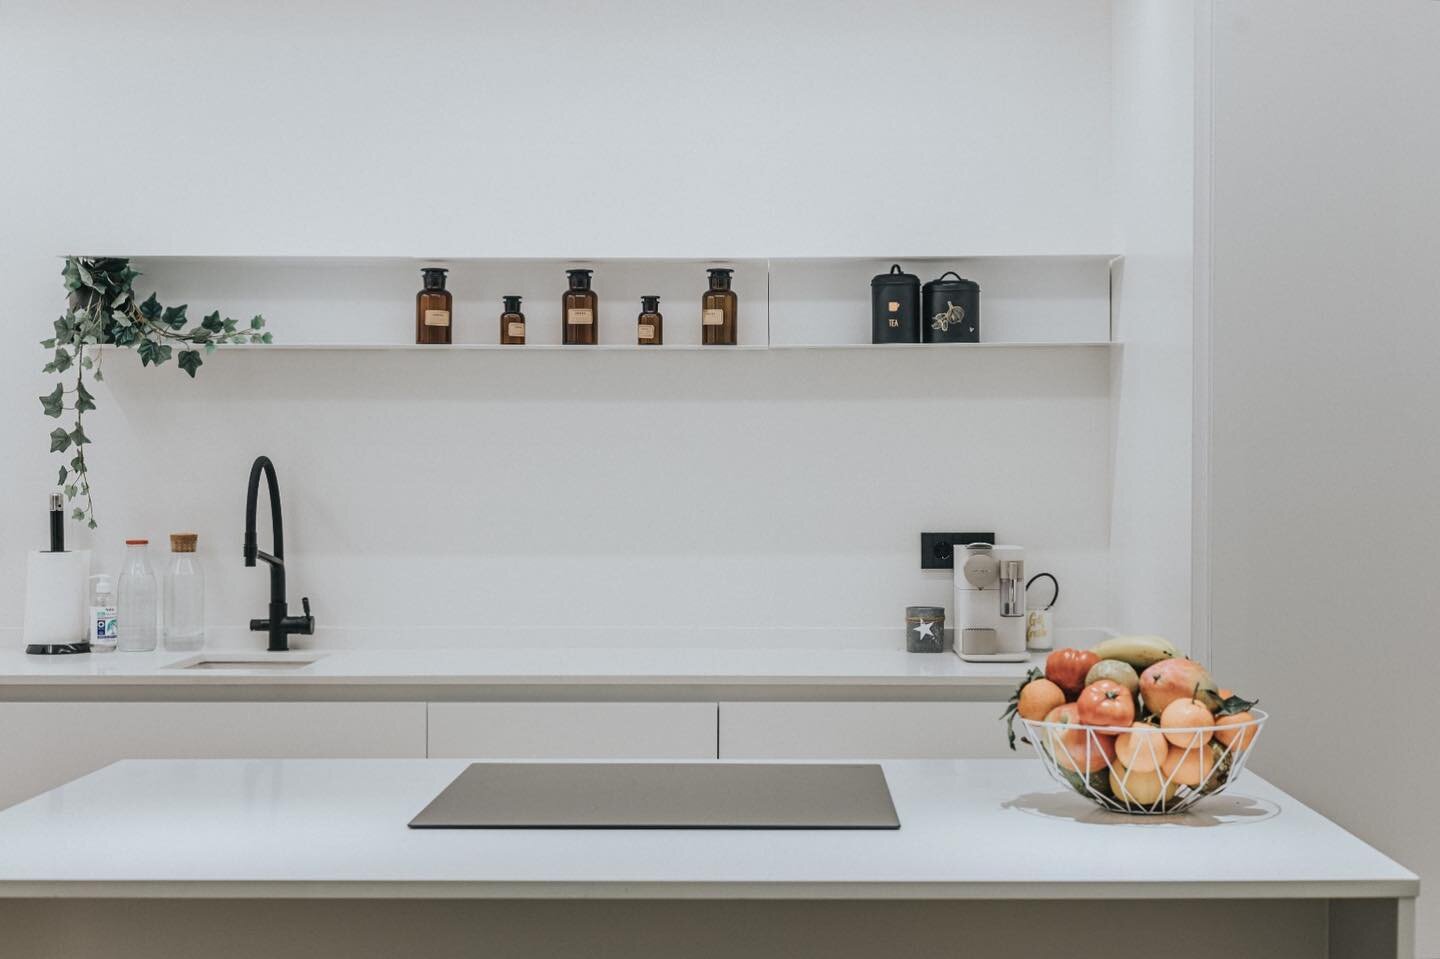 Equilibrio minimalista
-
#baobabarquitectura #arquitectura #architecture_minimalist #architecture #kitchendesign #design #designlovers #white #home #whitekitchen #valencia